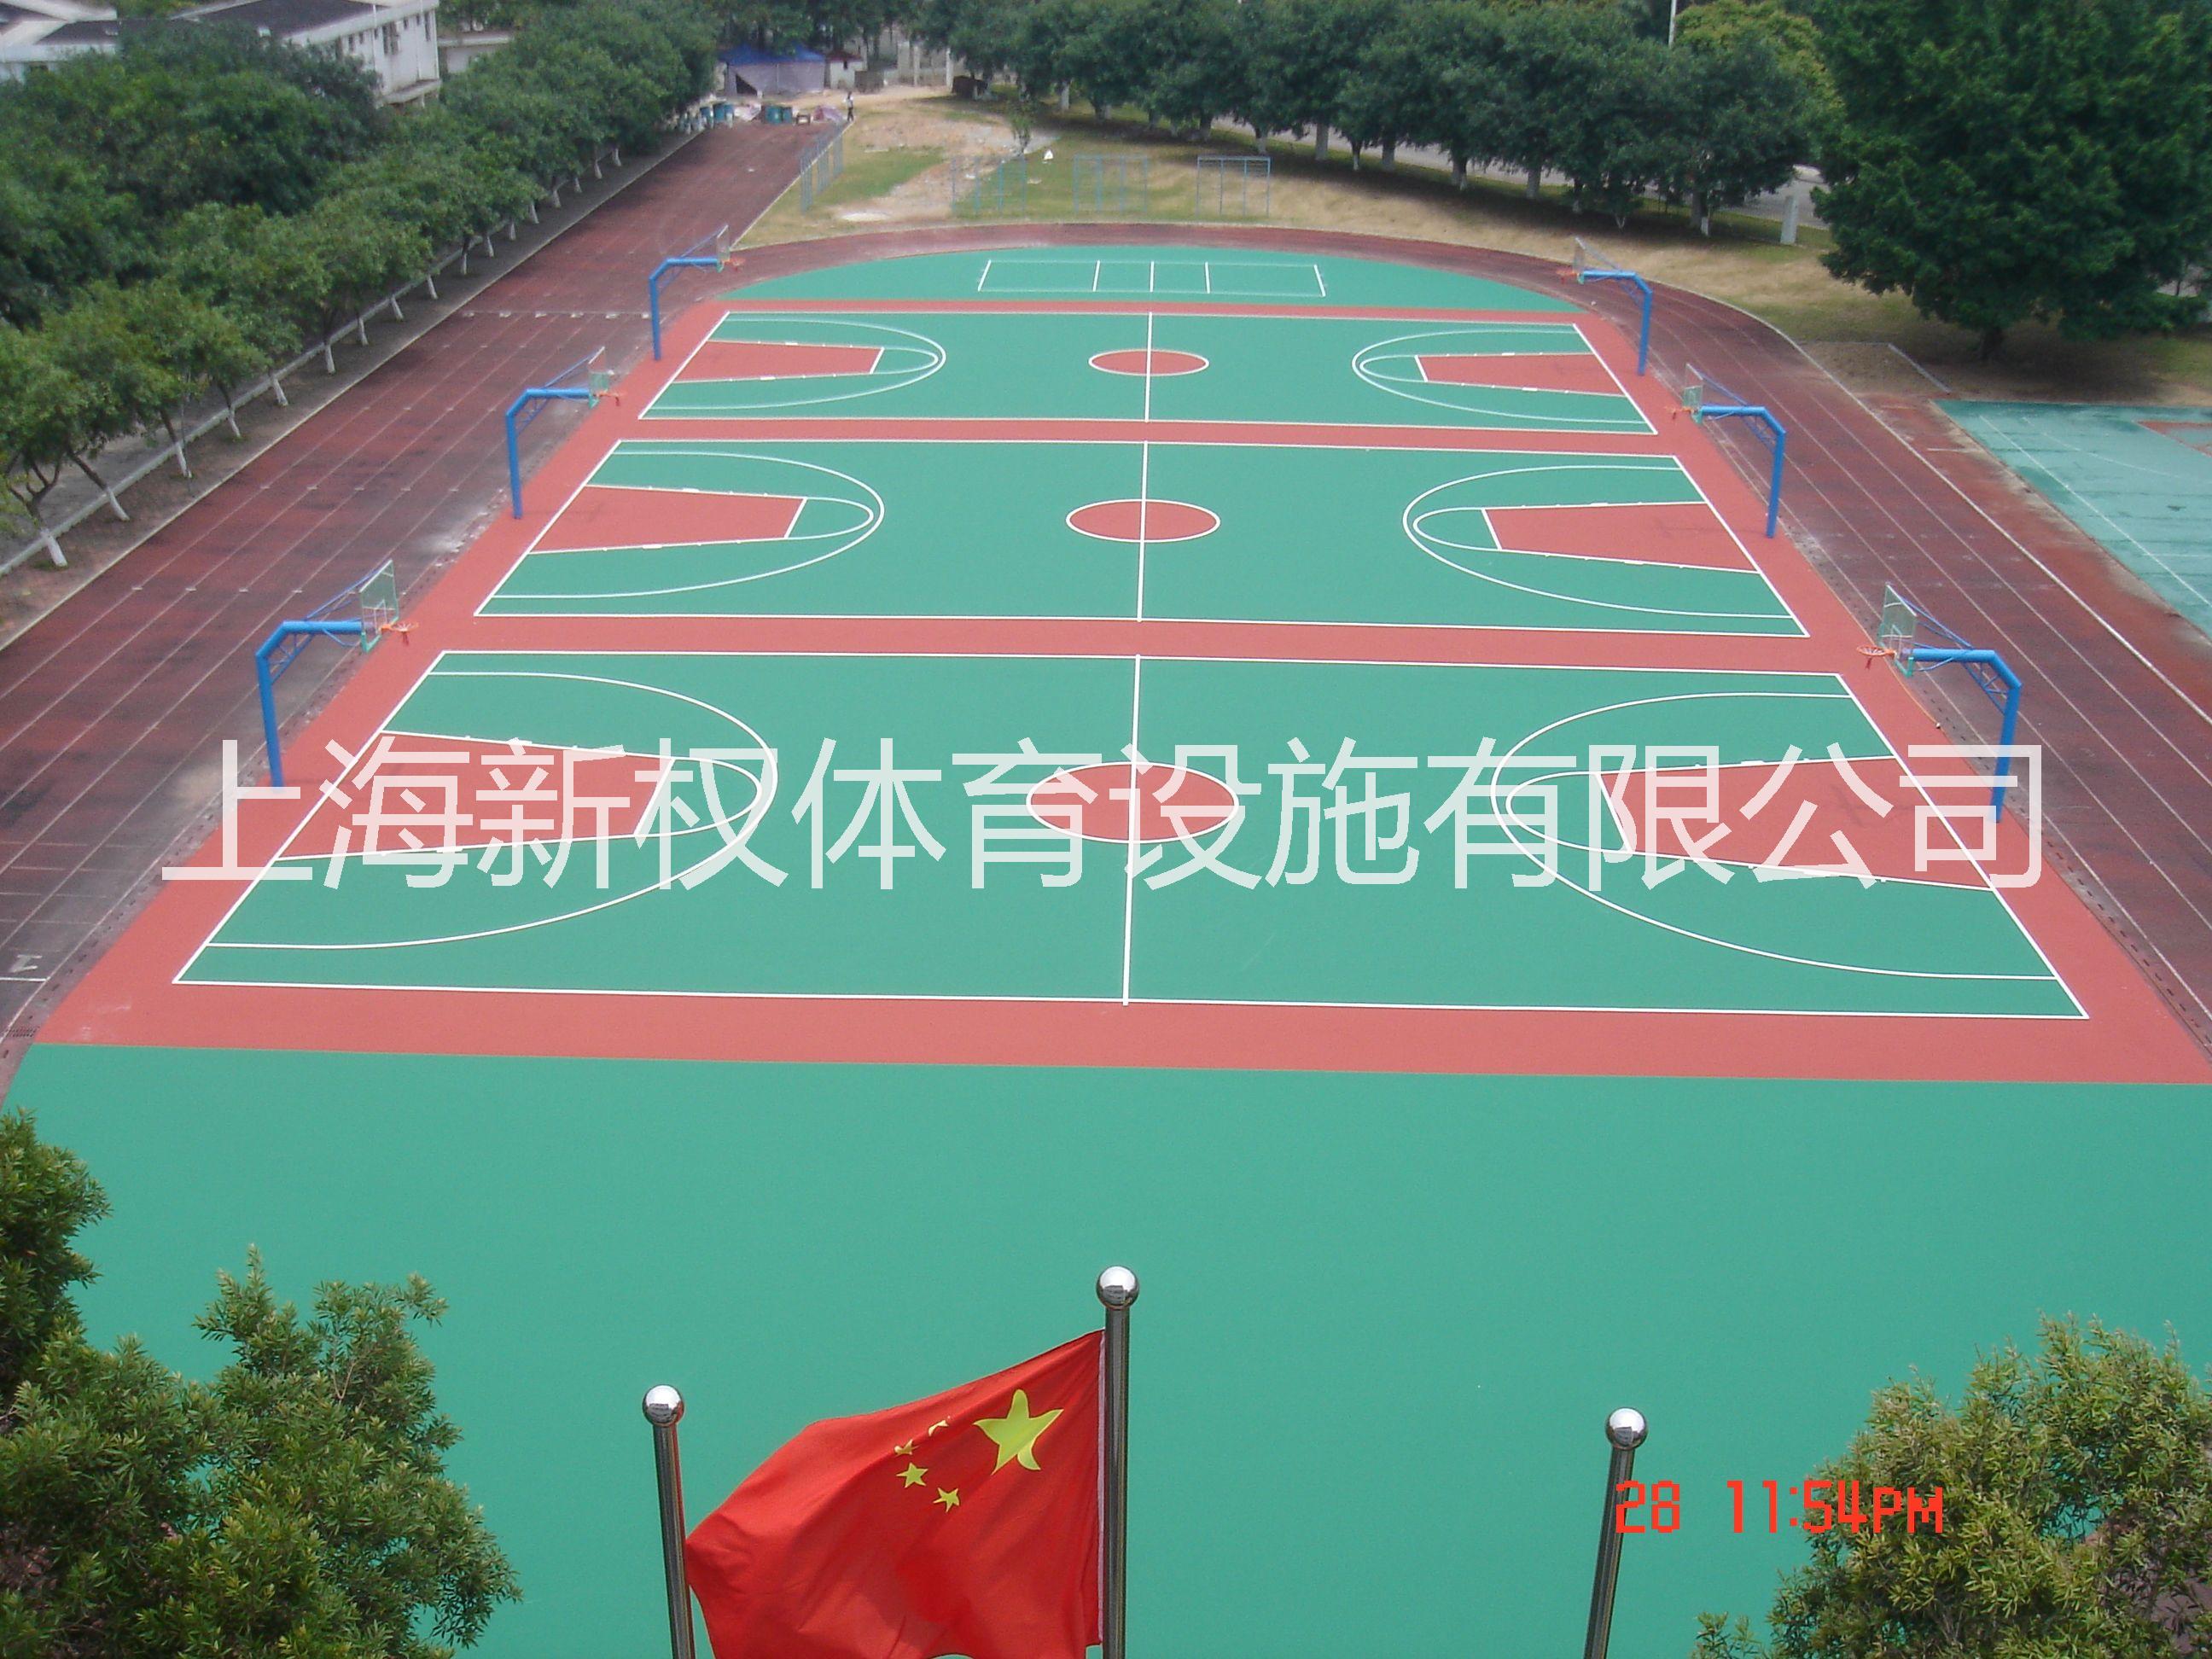 上海幼儿园室内pvc地板施工